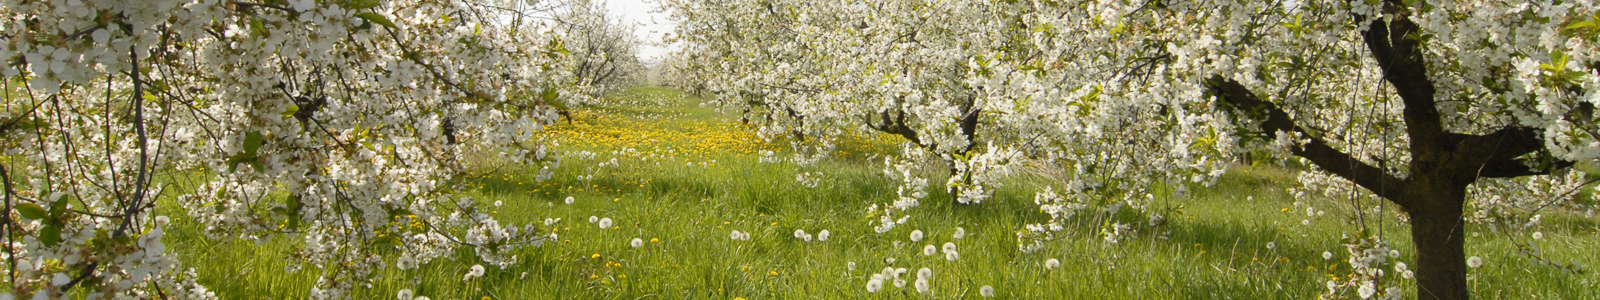 Blühende Apelbäume auf einer Wiese ©DLR